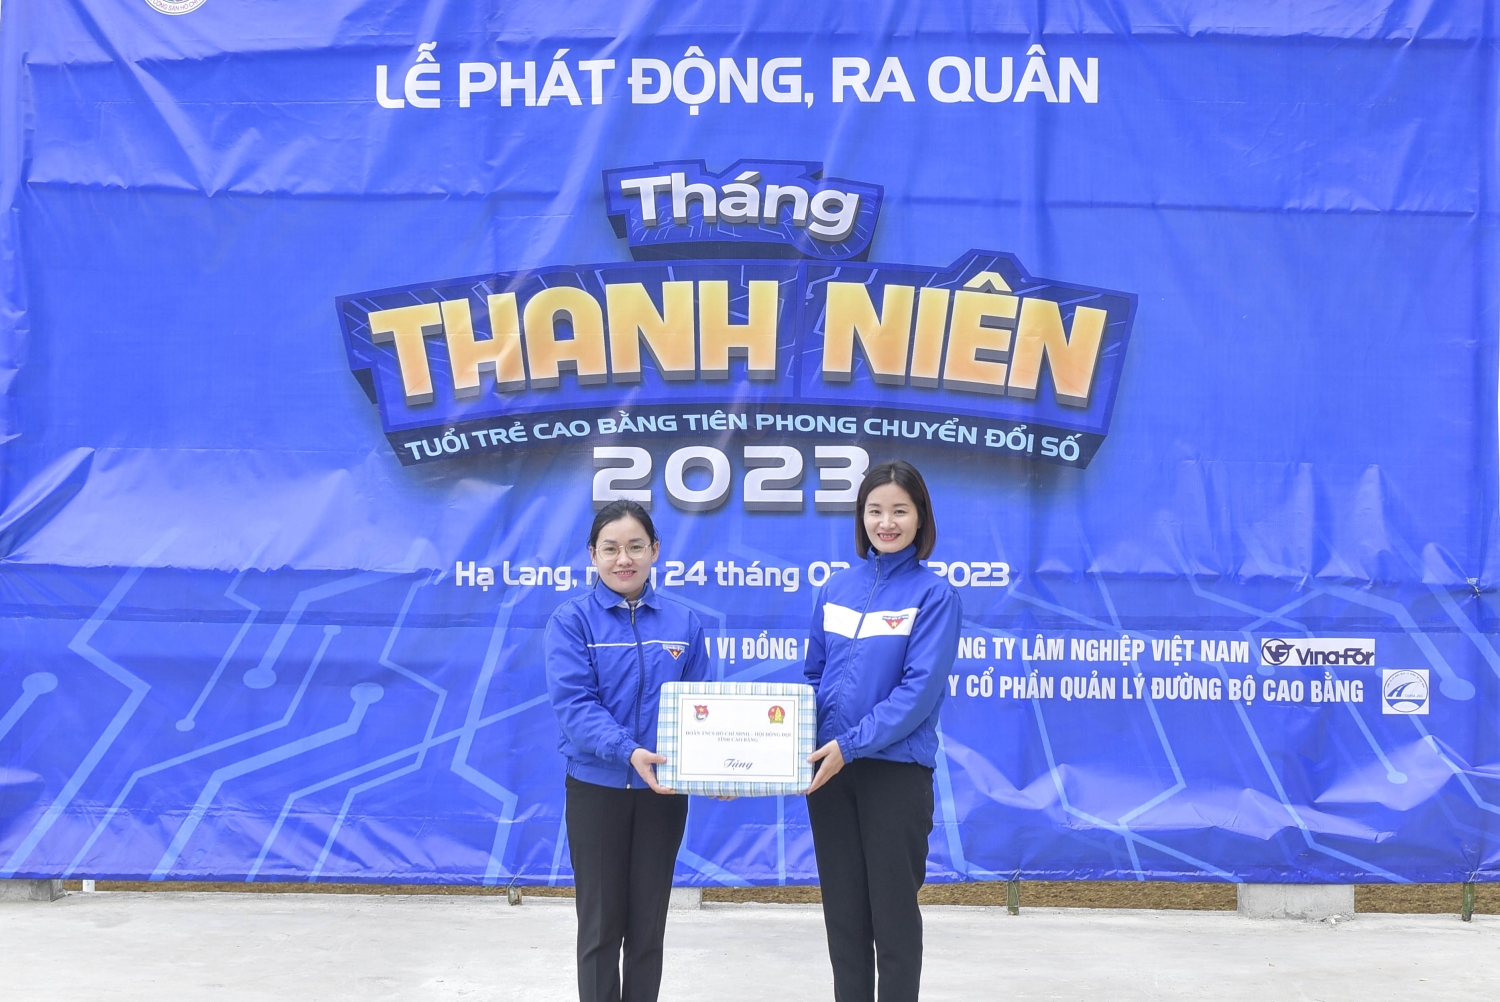 Tỉnh Đoàn Hội Đồng Đội tỉnh Cao Bằng trao tặng 500 khăn quàng cho Hội đồng Đội huyện Hạ Lang